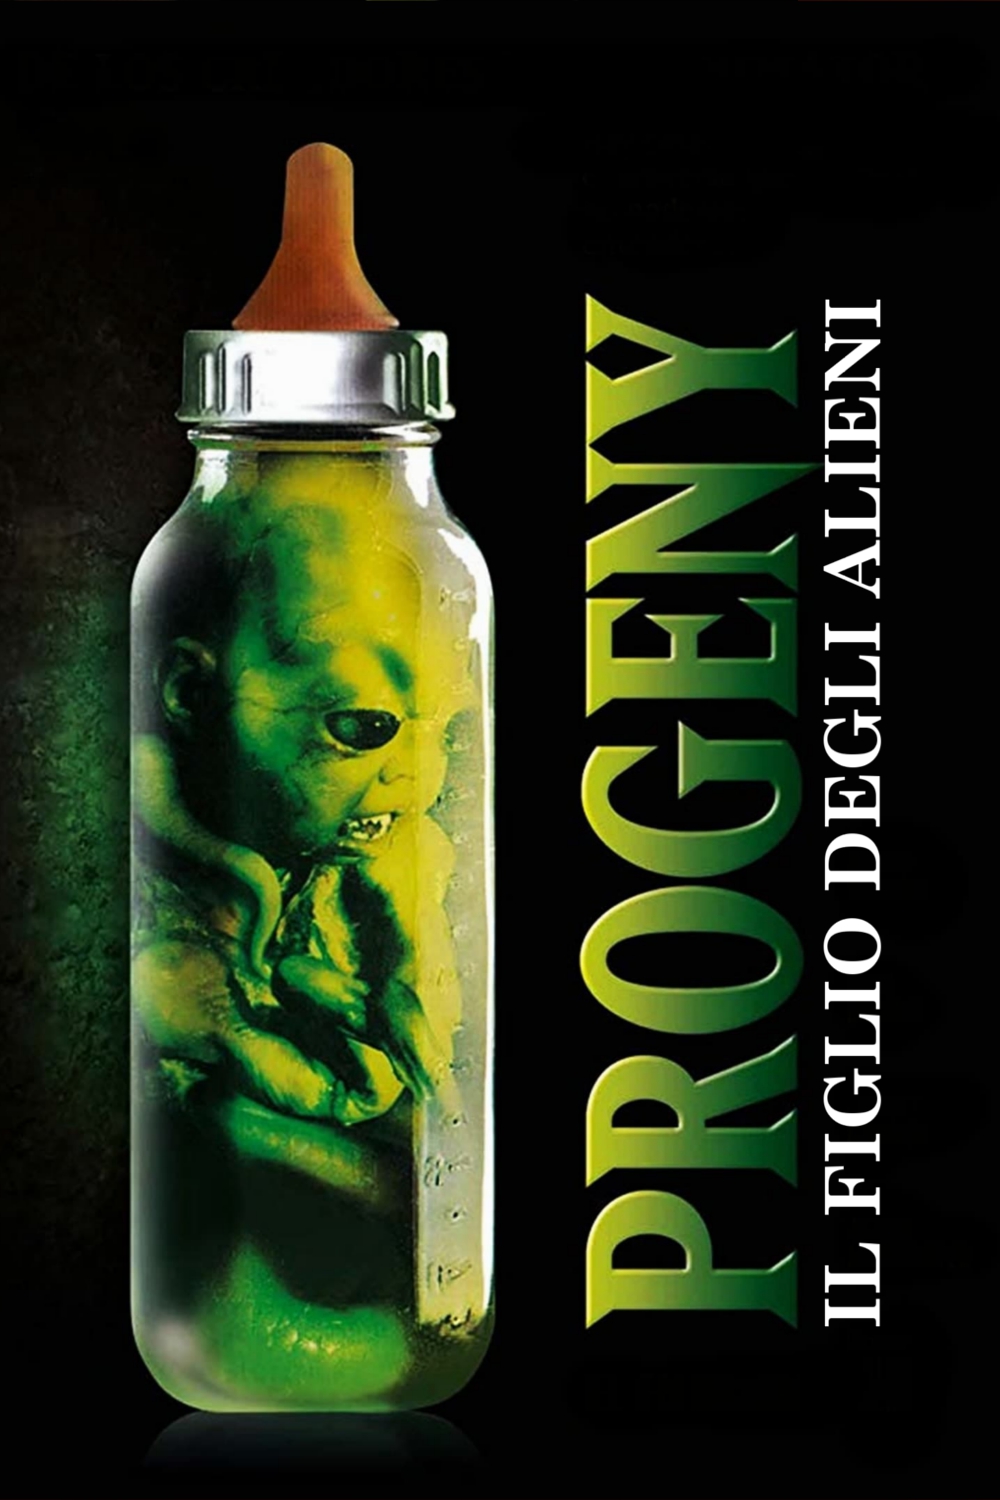 Progeny – Il figlio degli alieni (1998)